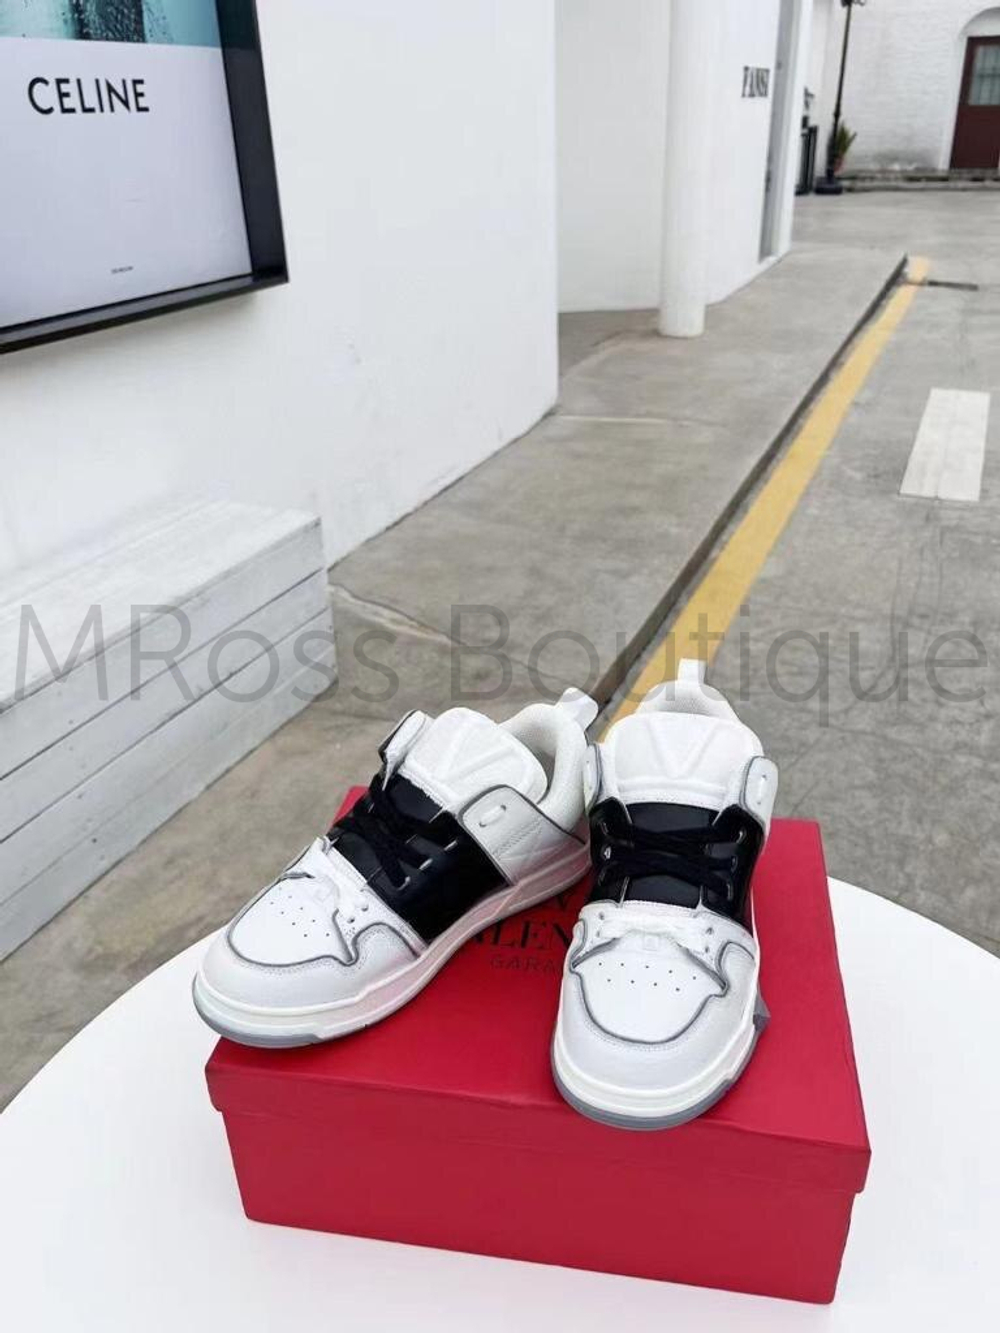 Белые женские кроссовки Valentino с черной вставкой (Валентино) люкс класса